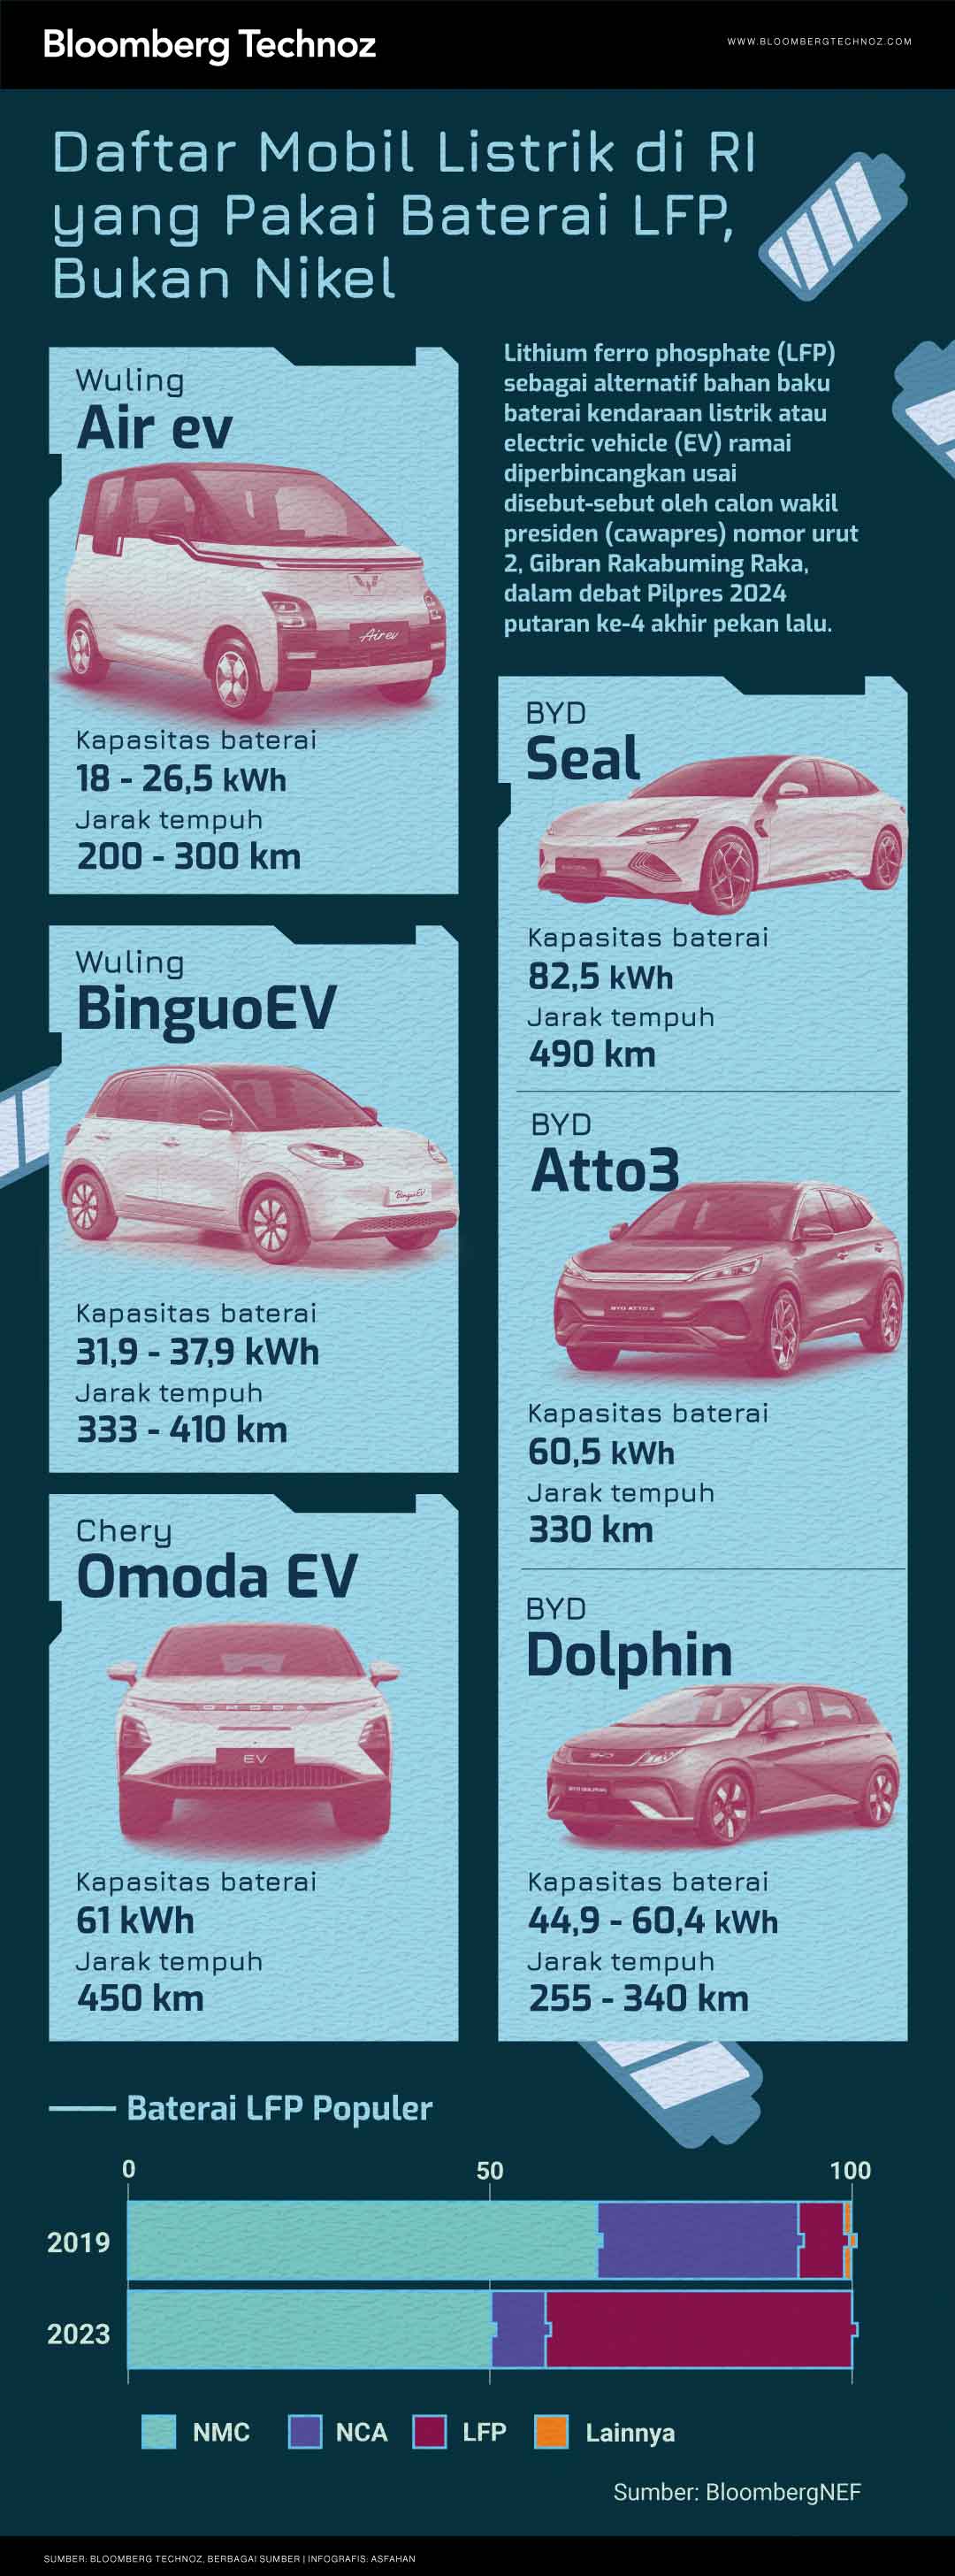 Infografis Daftar Mobil Listrik di RI yang Pakai Baterai LFP, Bukan Nikel (Asfahan/Bloomberg Technoz)